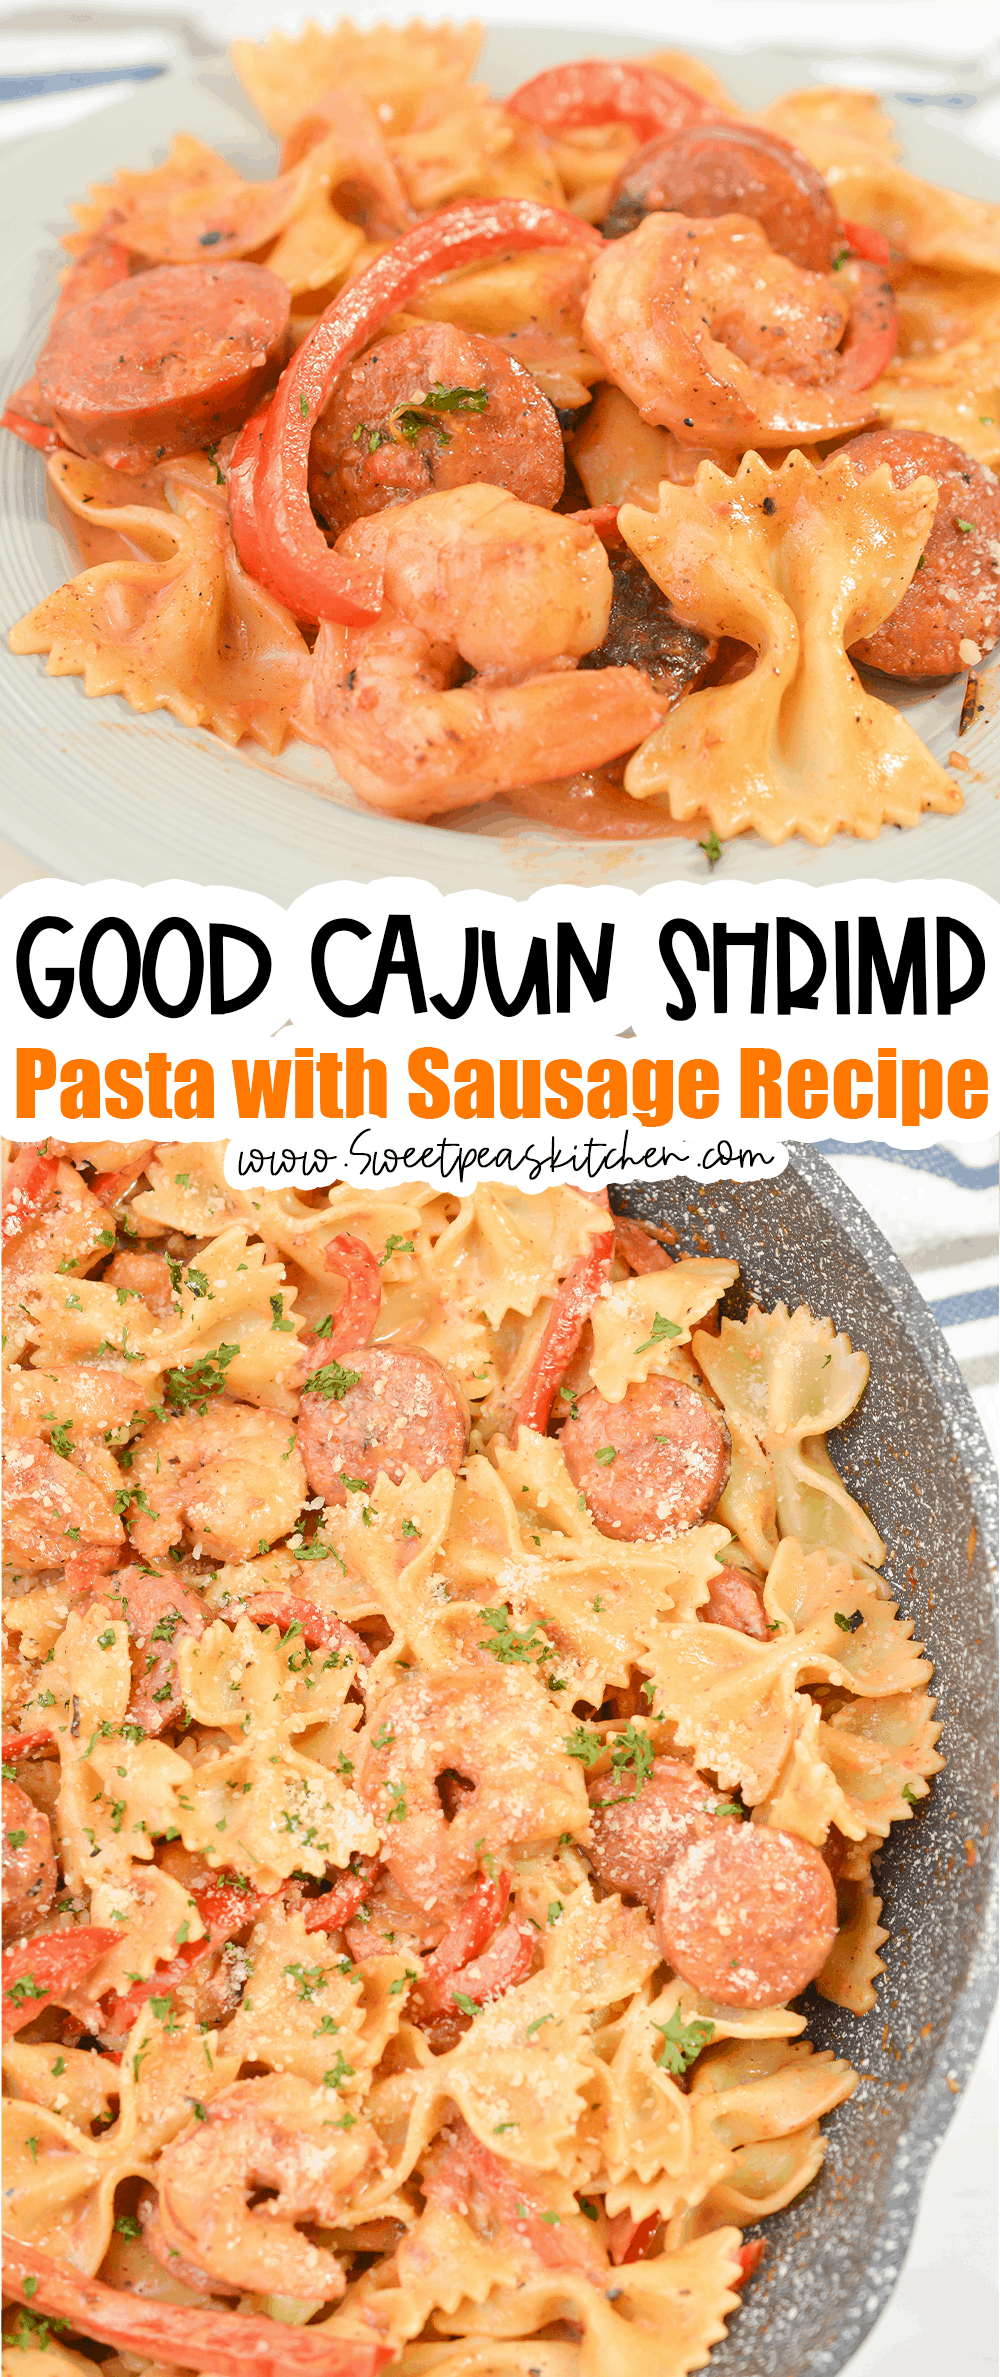 Cajun Shrimp Pasta with Sausage